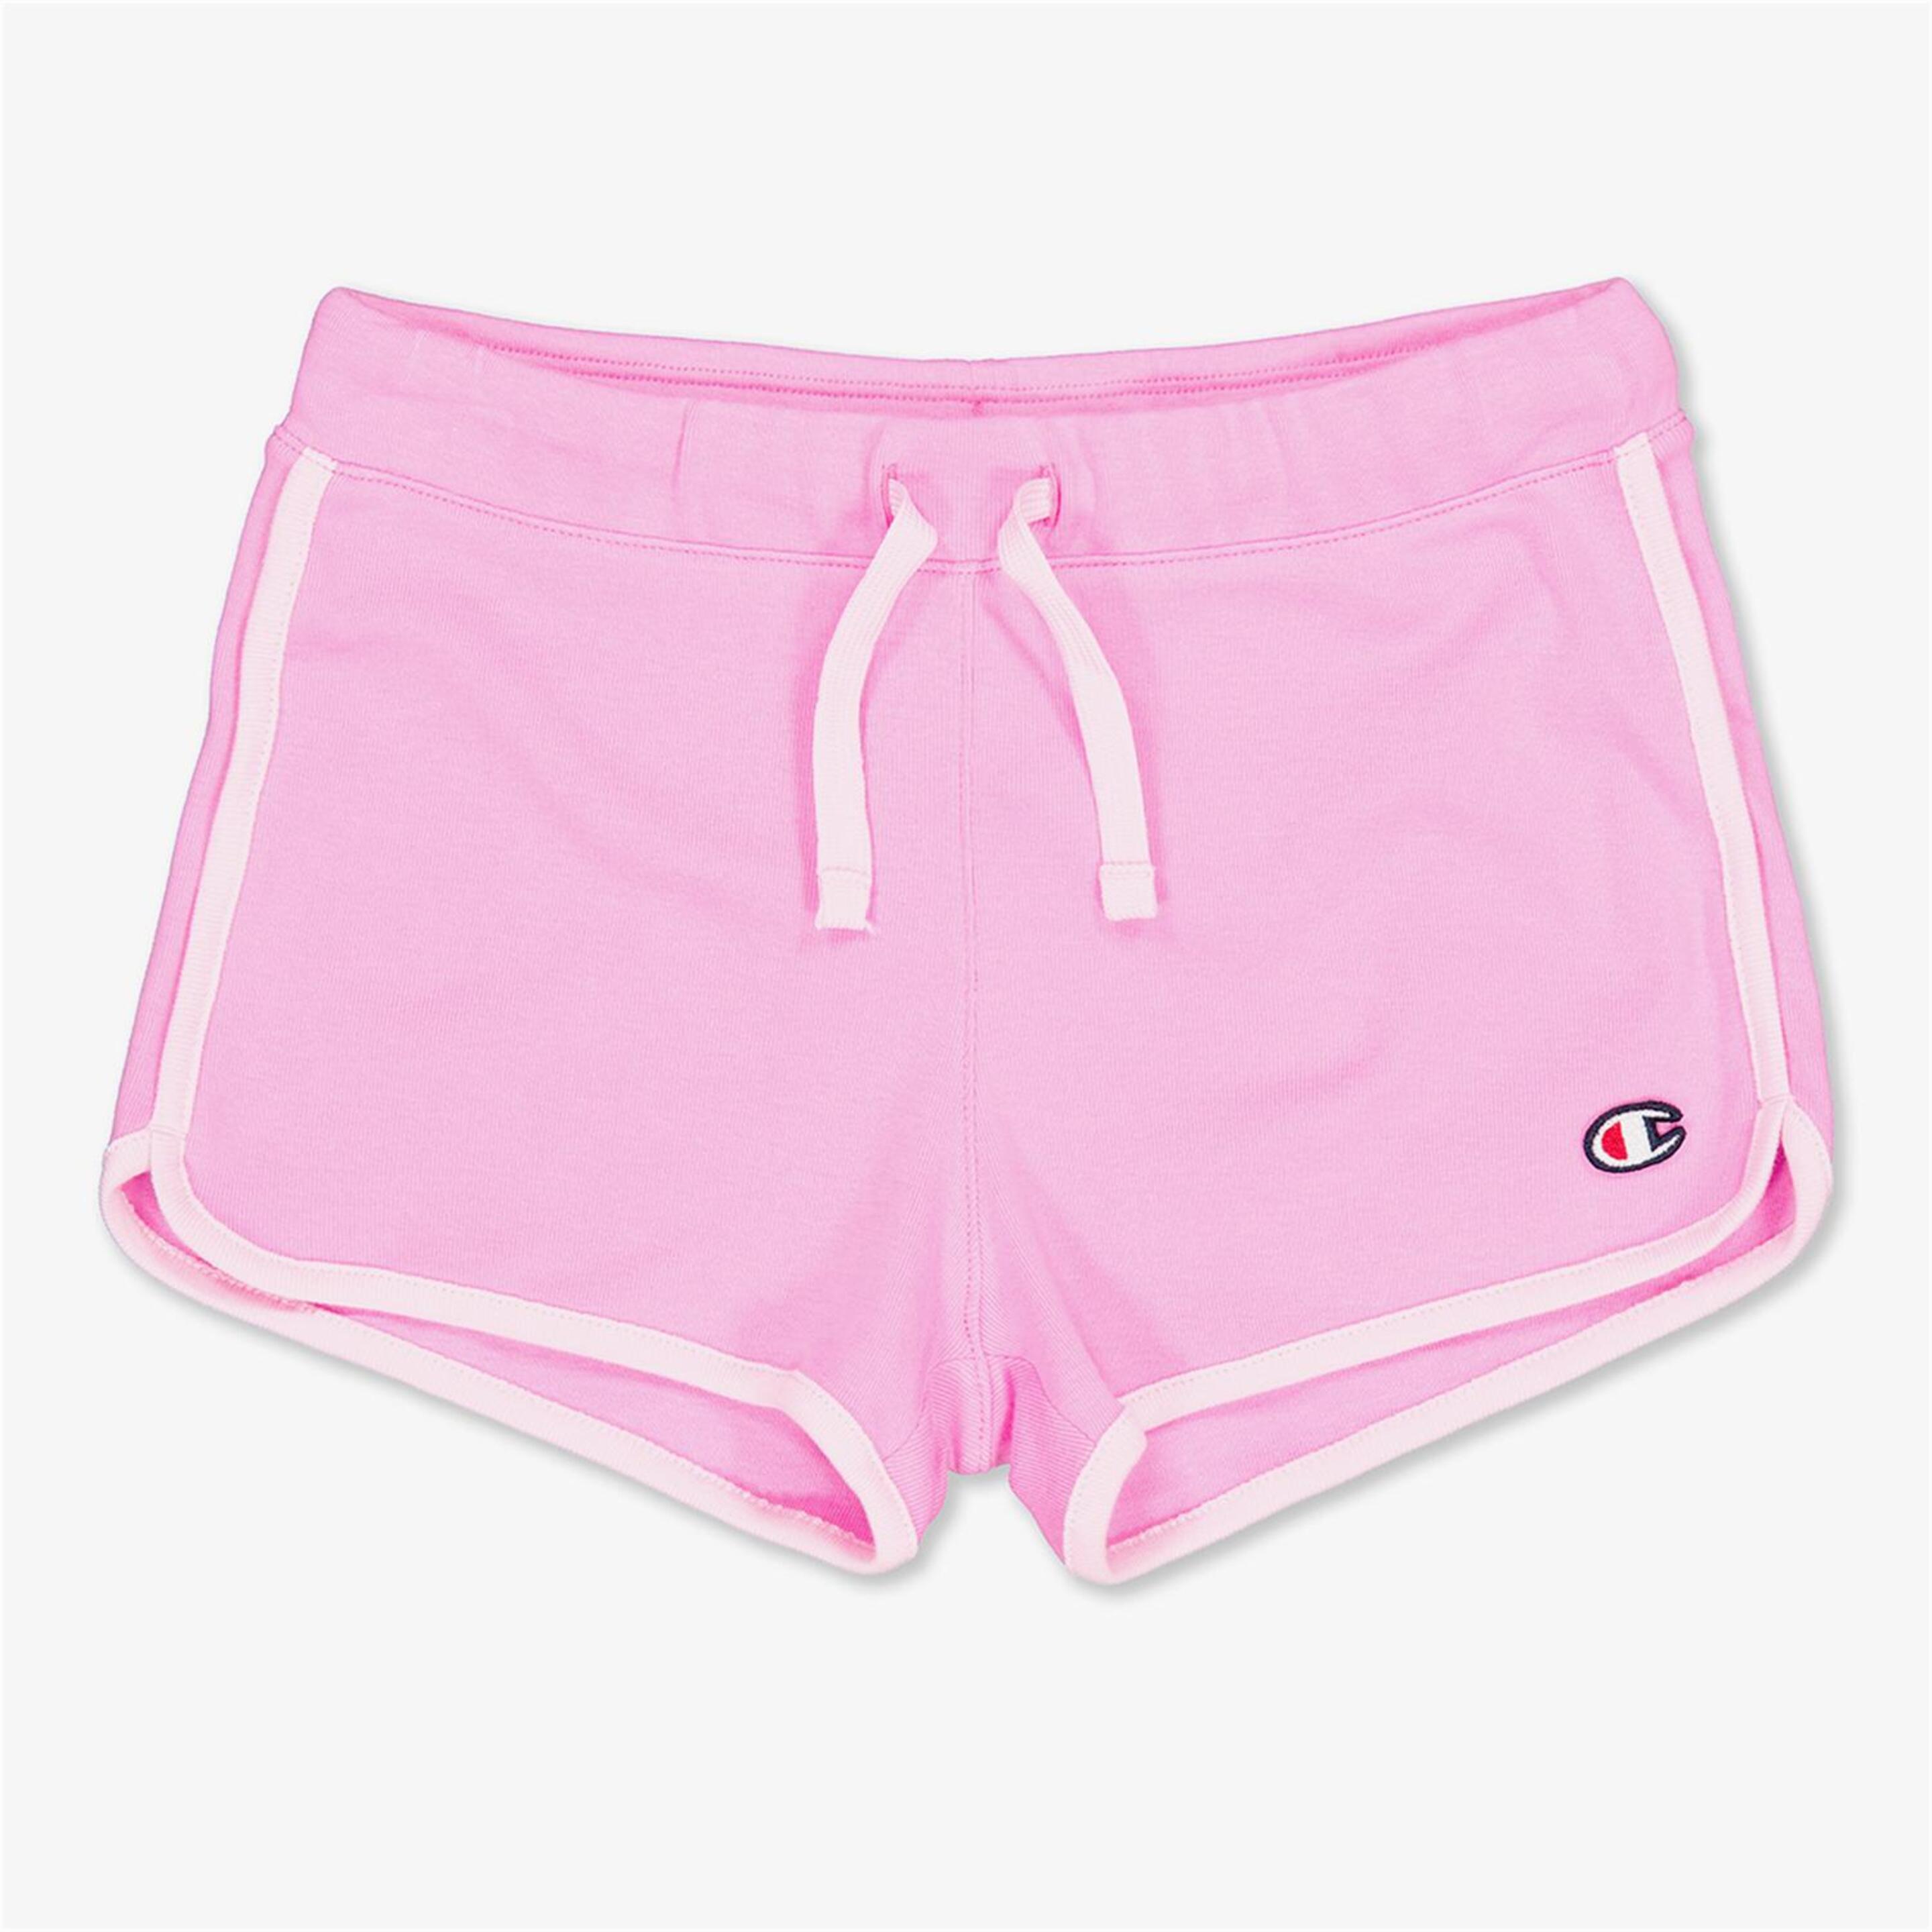 Pantalón Champion - rosa - Pantalón Corto Niña